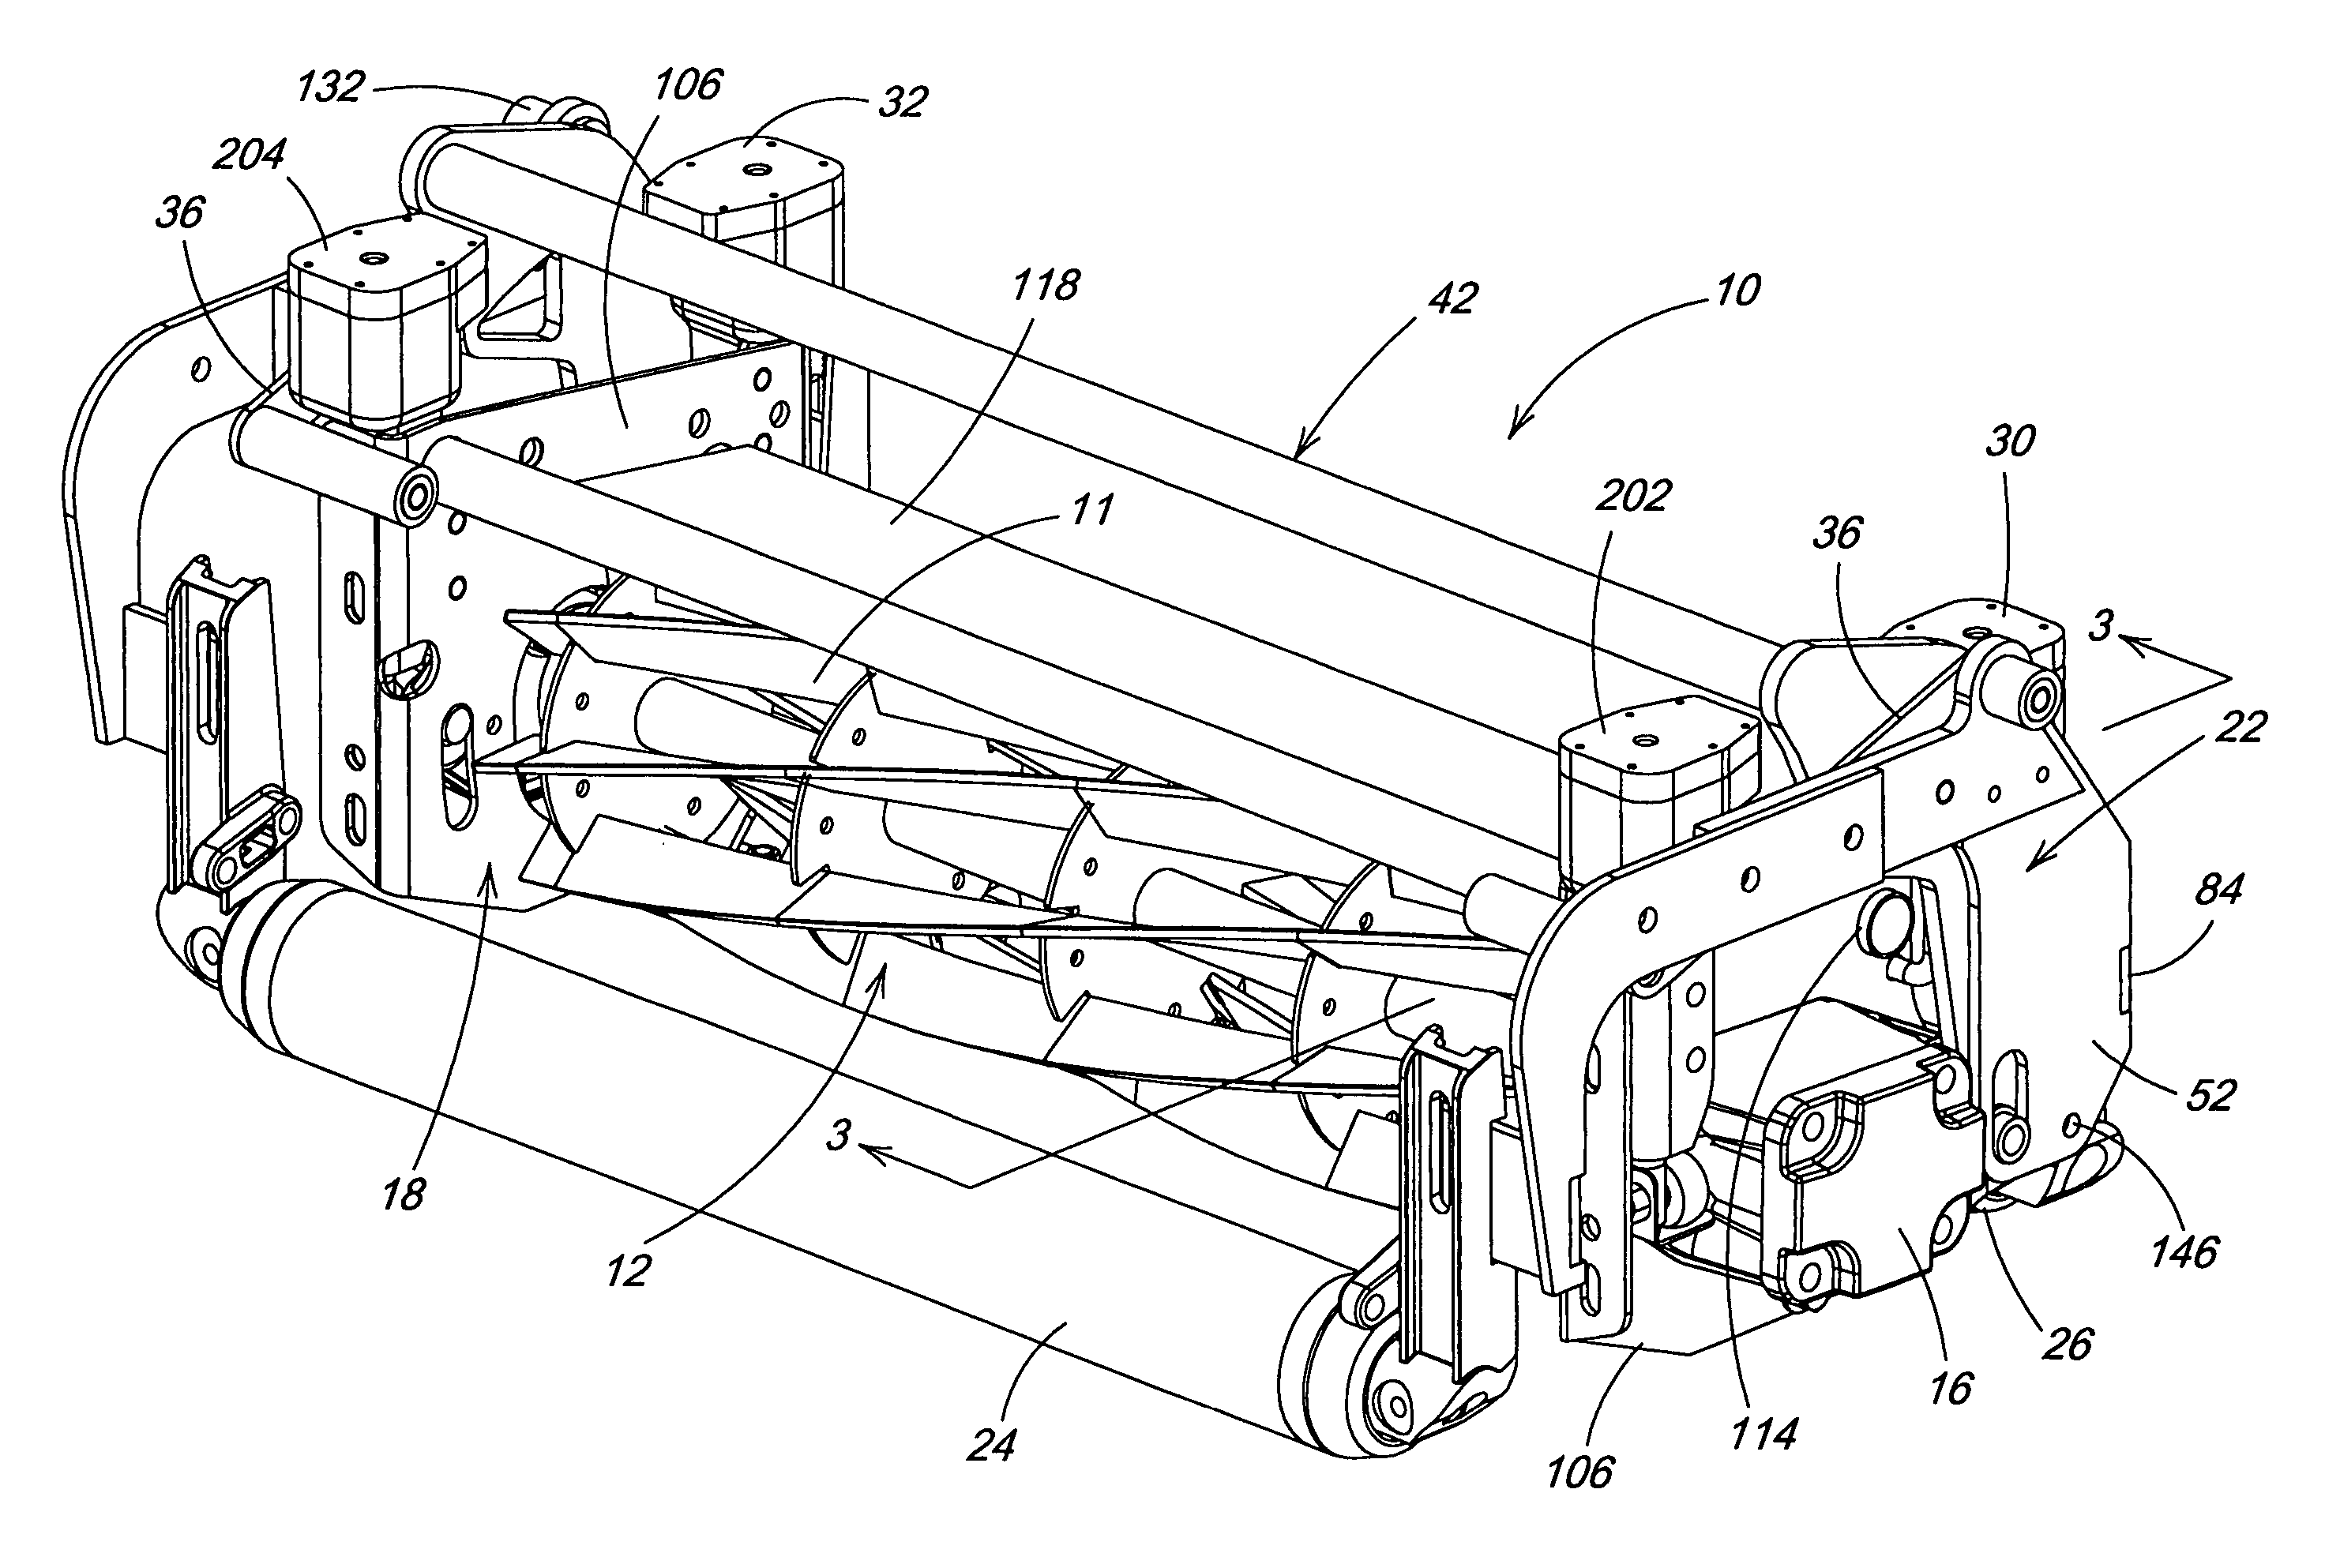 Manual or self-adjusting reel mower